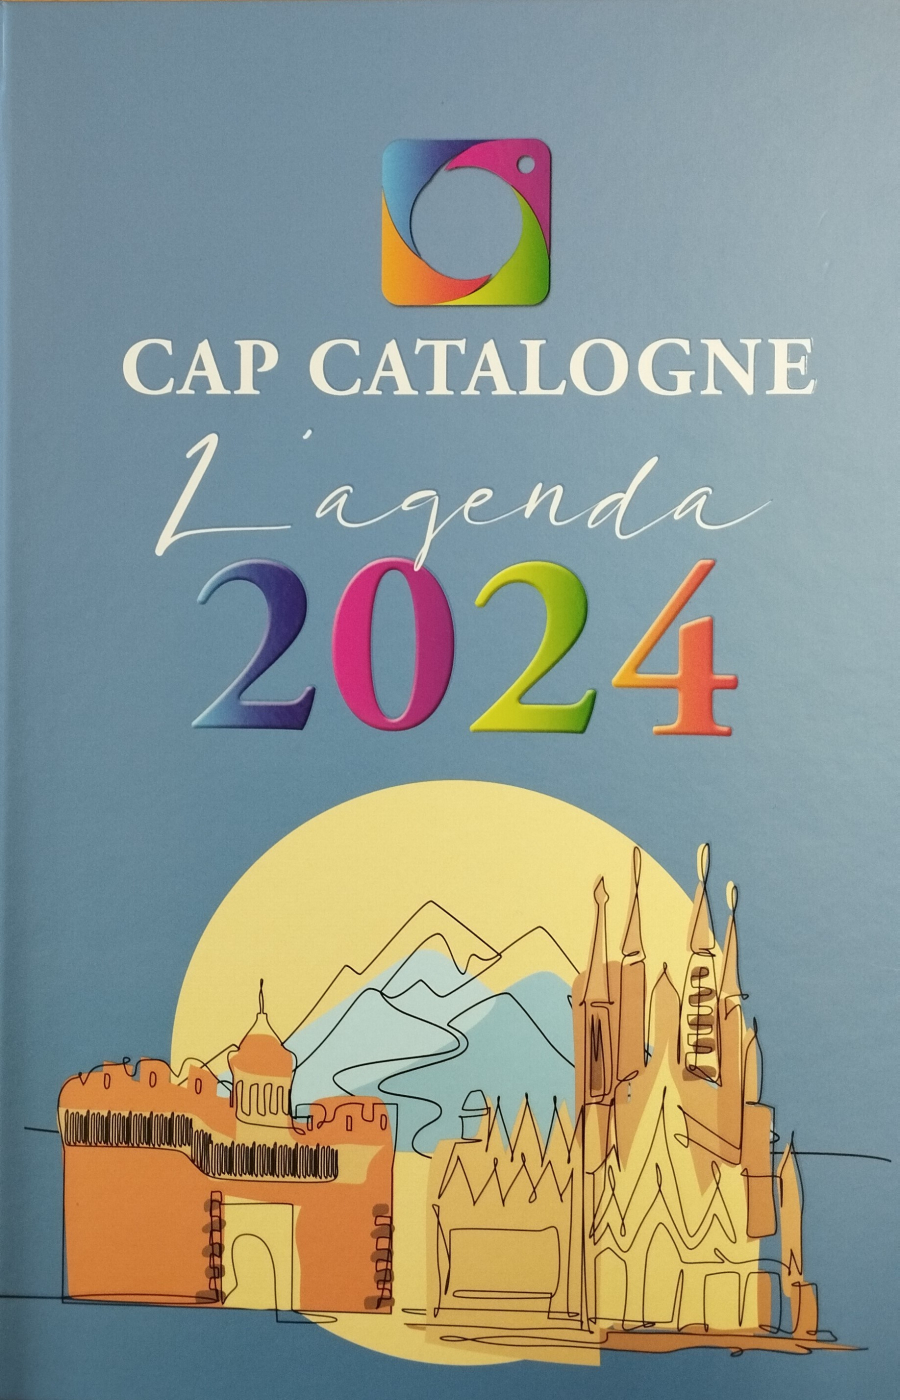 Turisme Urgell present a l'agenda anual 2024, de la revista turística Cap Catalogne.